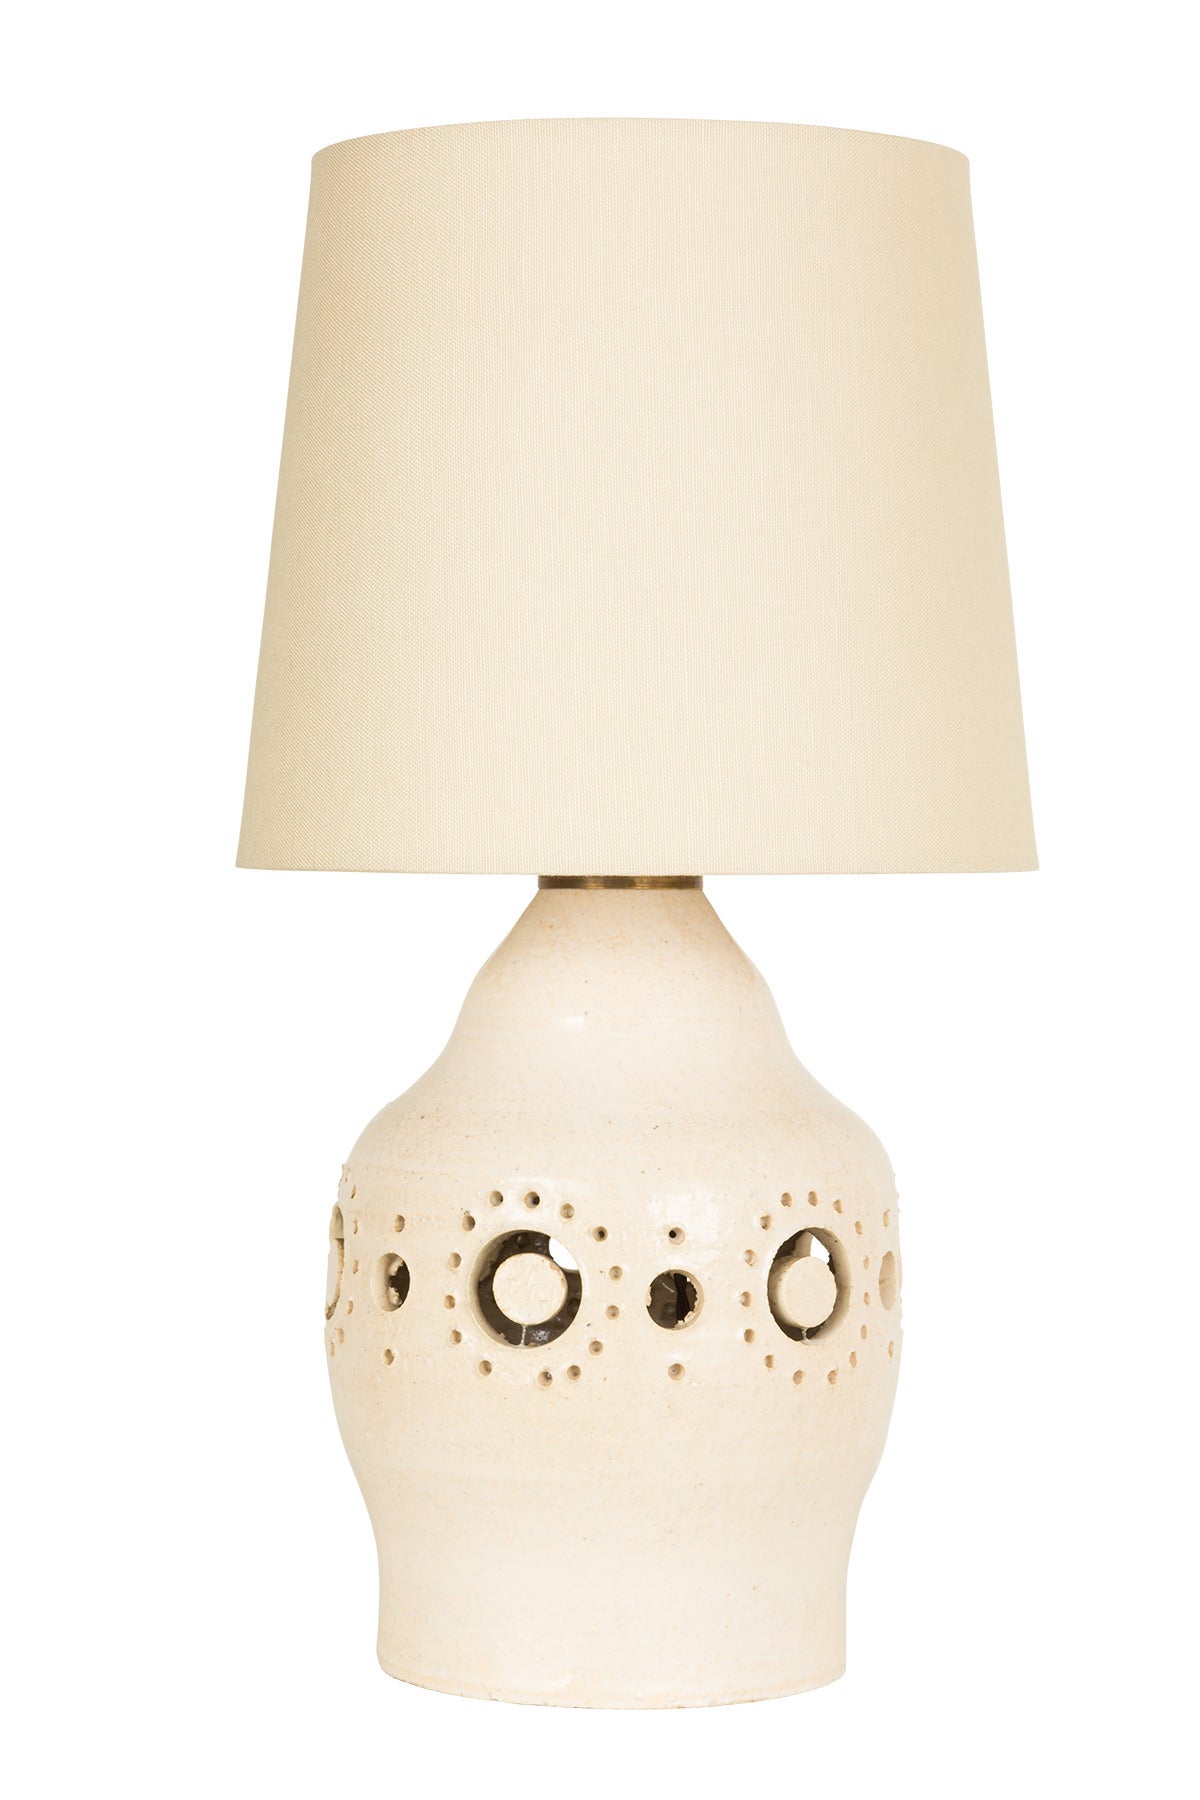 French Studio Ceramic Lamp